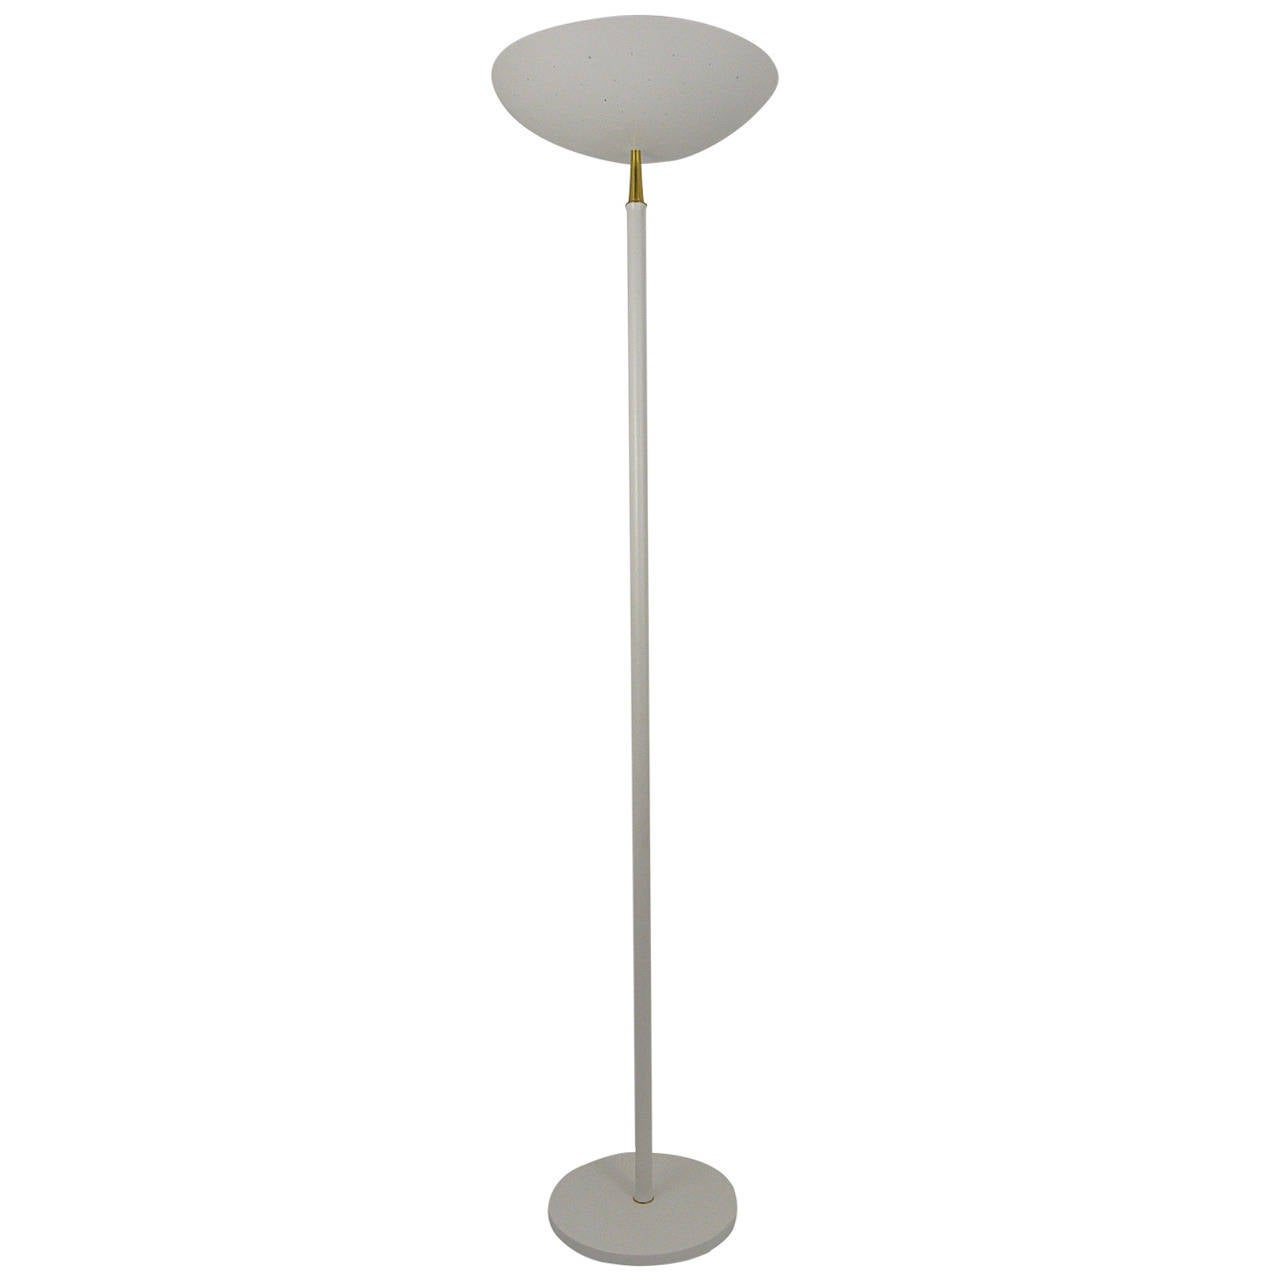 Elegant Italian Mid Century Uplight Floor Lamp Arteluce Style 1950s in size 1280 X 1280